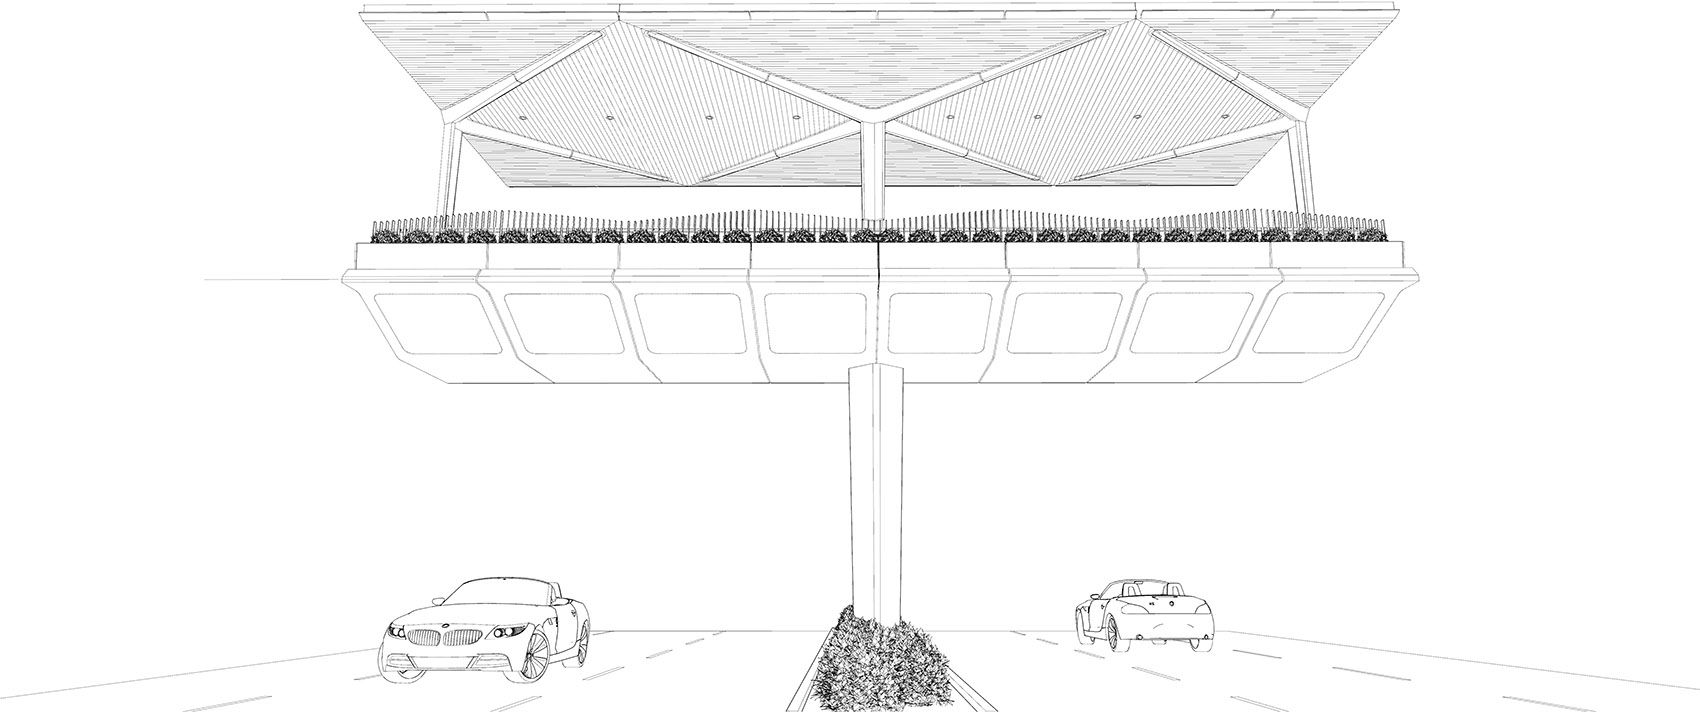 深圳水围天桥/利用想象和创意赋予天桥品质感和仪式感-68